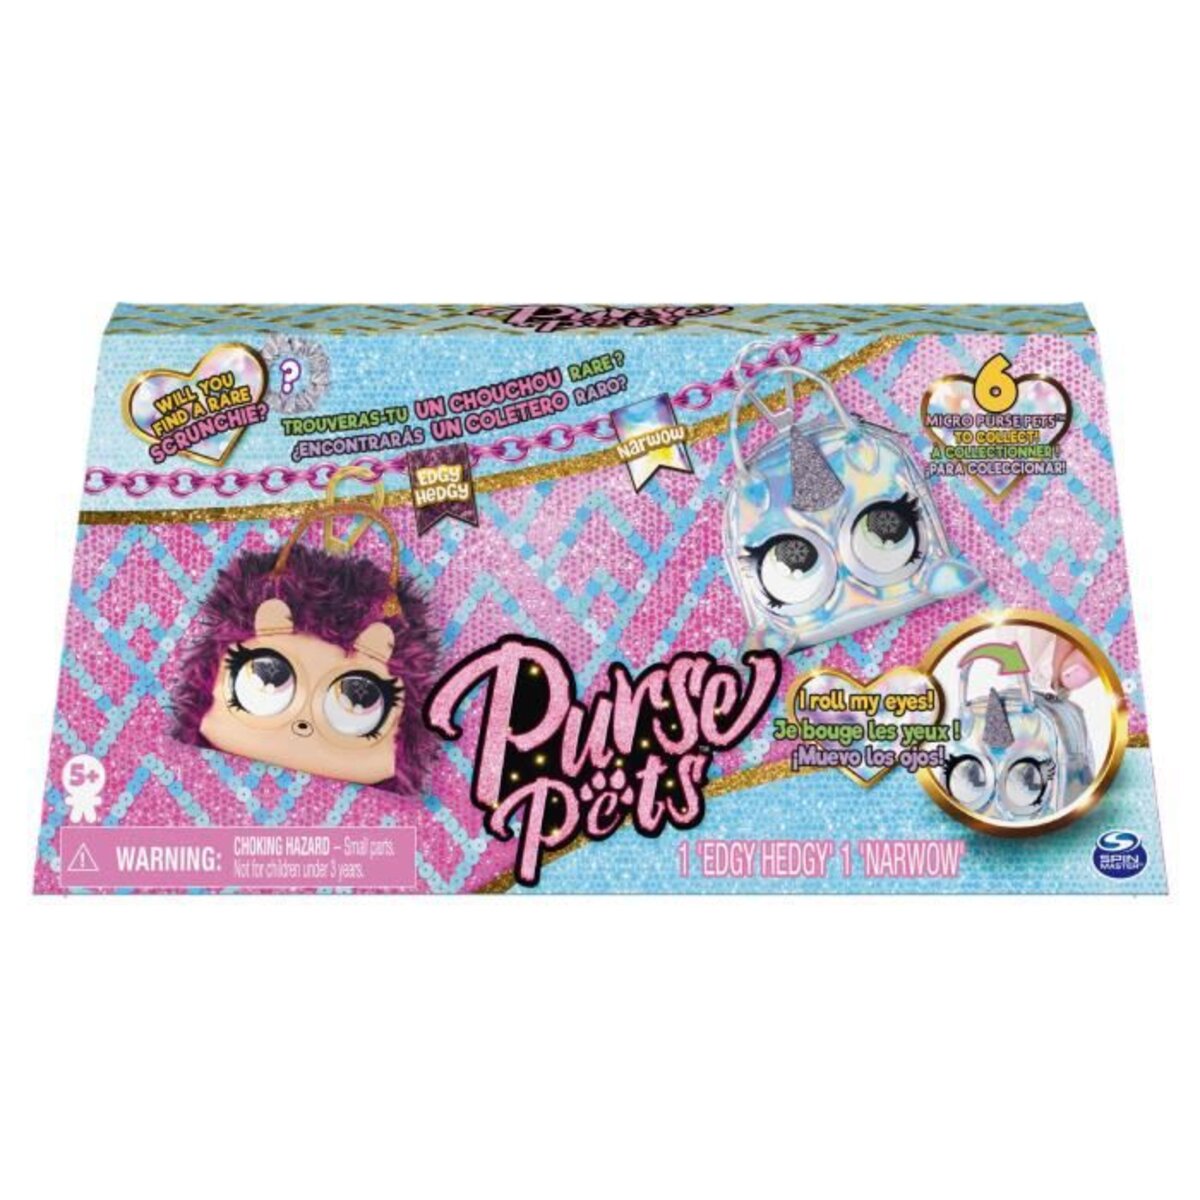 Bundle pack 2 micro purse pets - La Poste